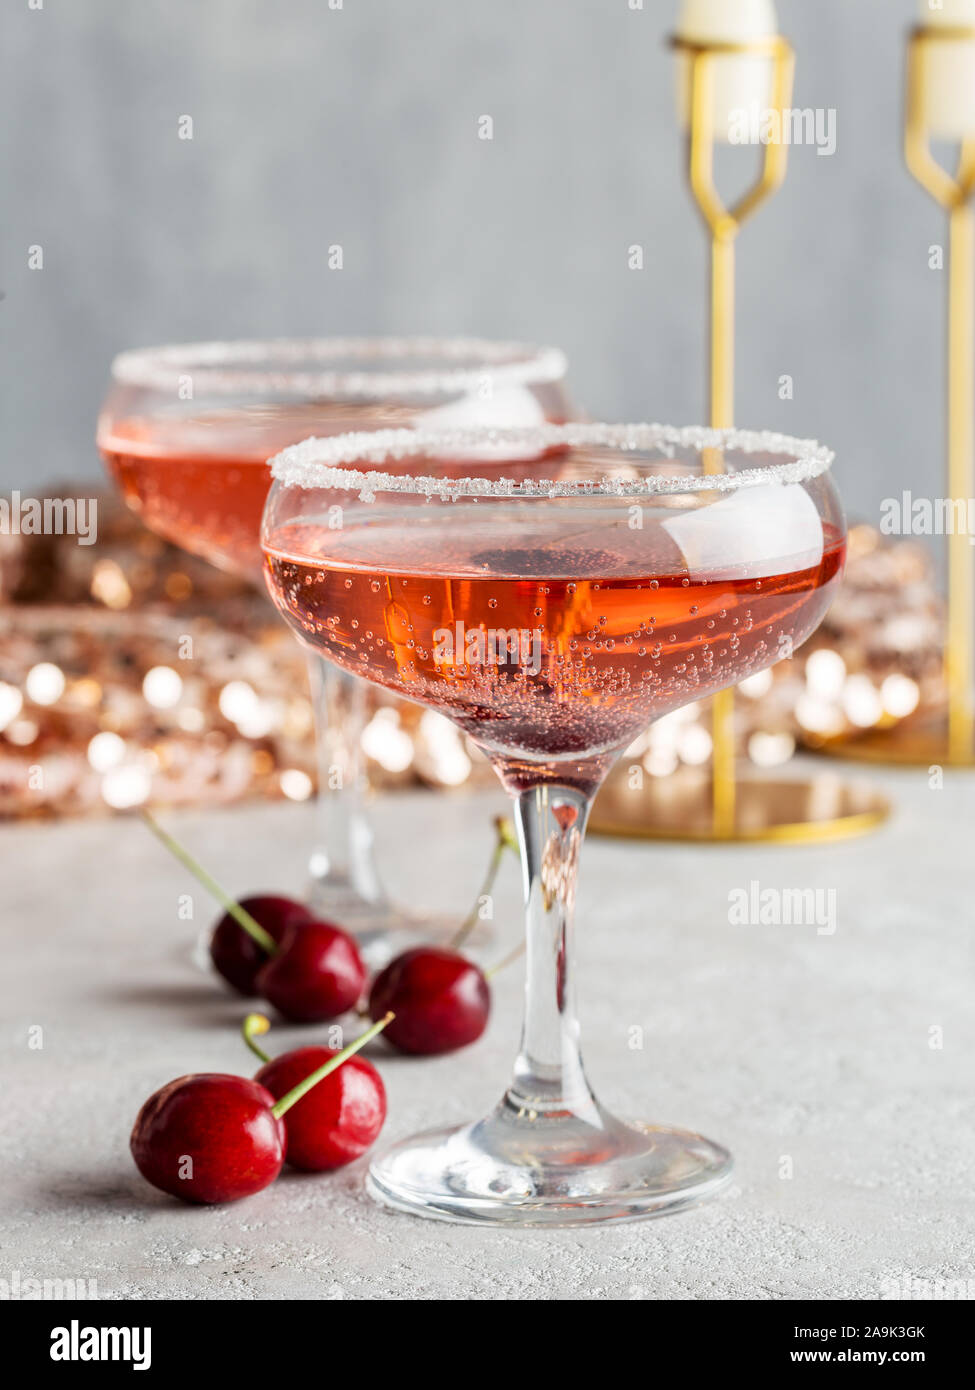 Dans les verres de champagne cerise avec des baies à Noël ou Nouvel An Banque D'Images